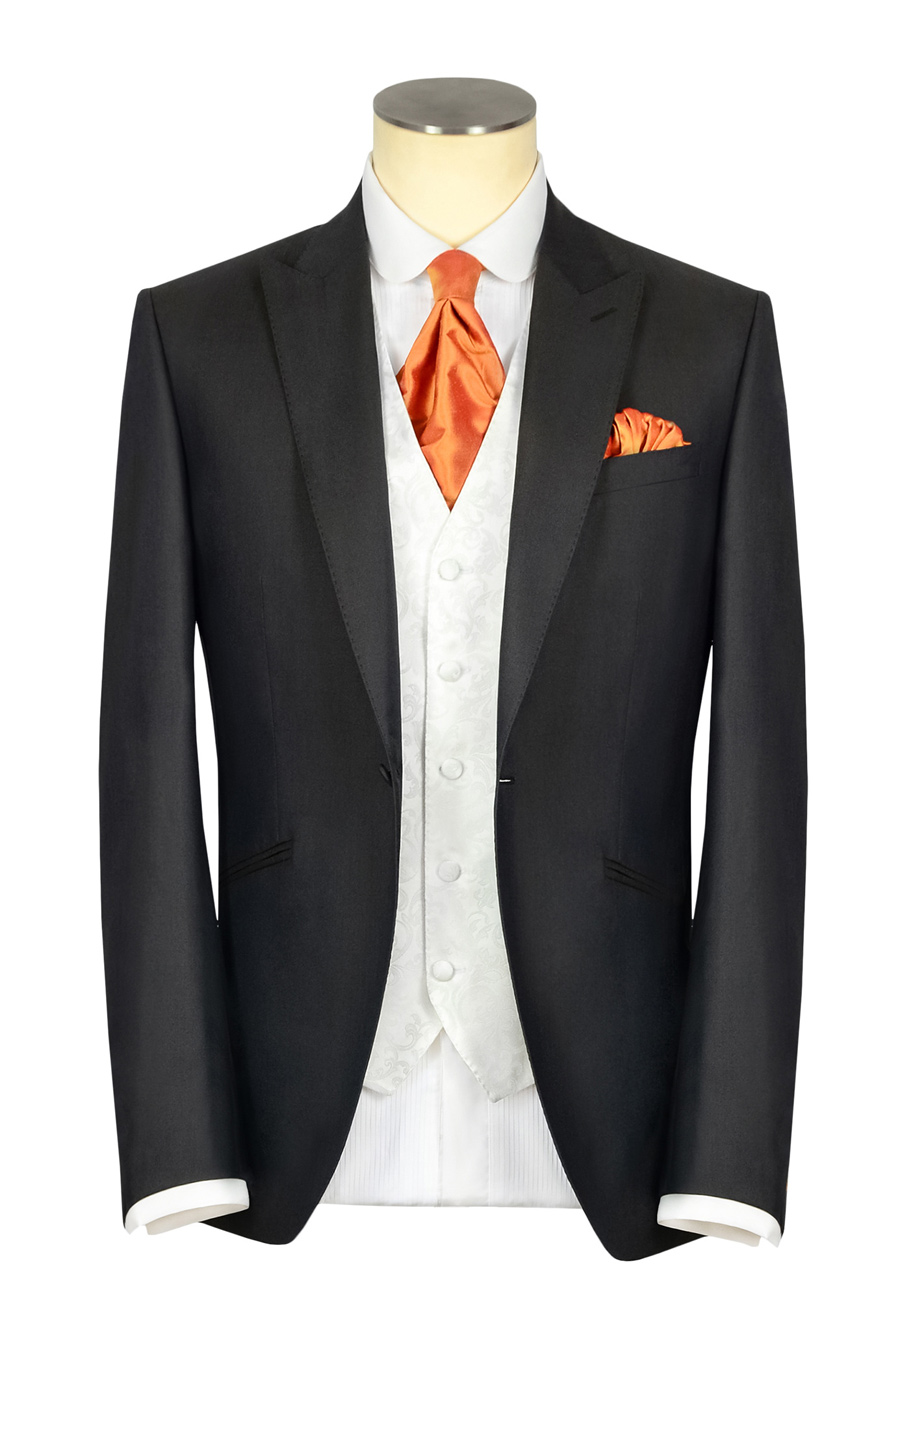 חליפת חתן: חליפת שלושה חלקים, חליפה בדוגמה חלקה, חליפה בצבע לבן, חליפה בצבע שחור - קינגסמן חליפות חתן